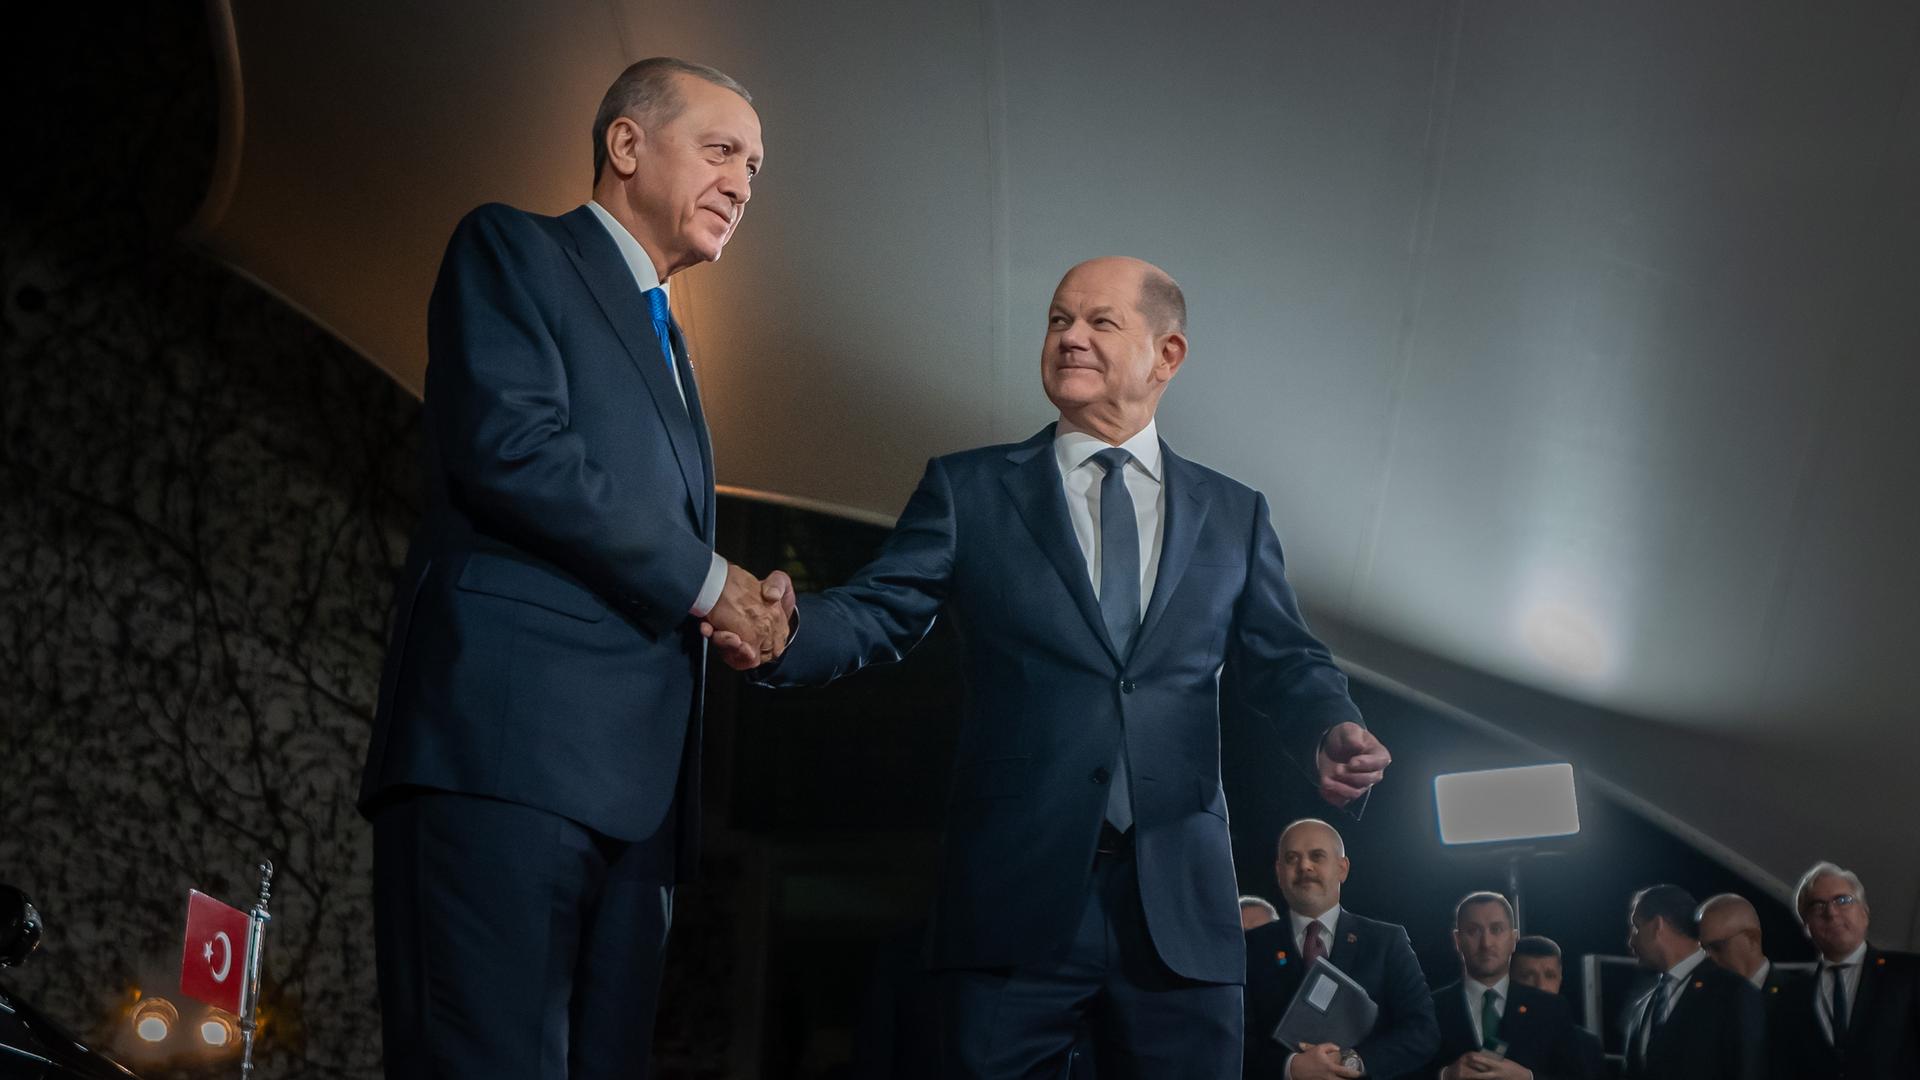 Bundeskanzler Olaf Scholz (SPD) empfängt Recep Tayyip Erdogan, Präsident der Türkei, zu einem Gespräch und Abendessen im Bundeskanzleramt.